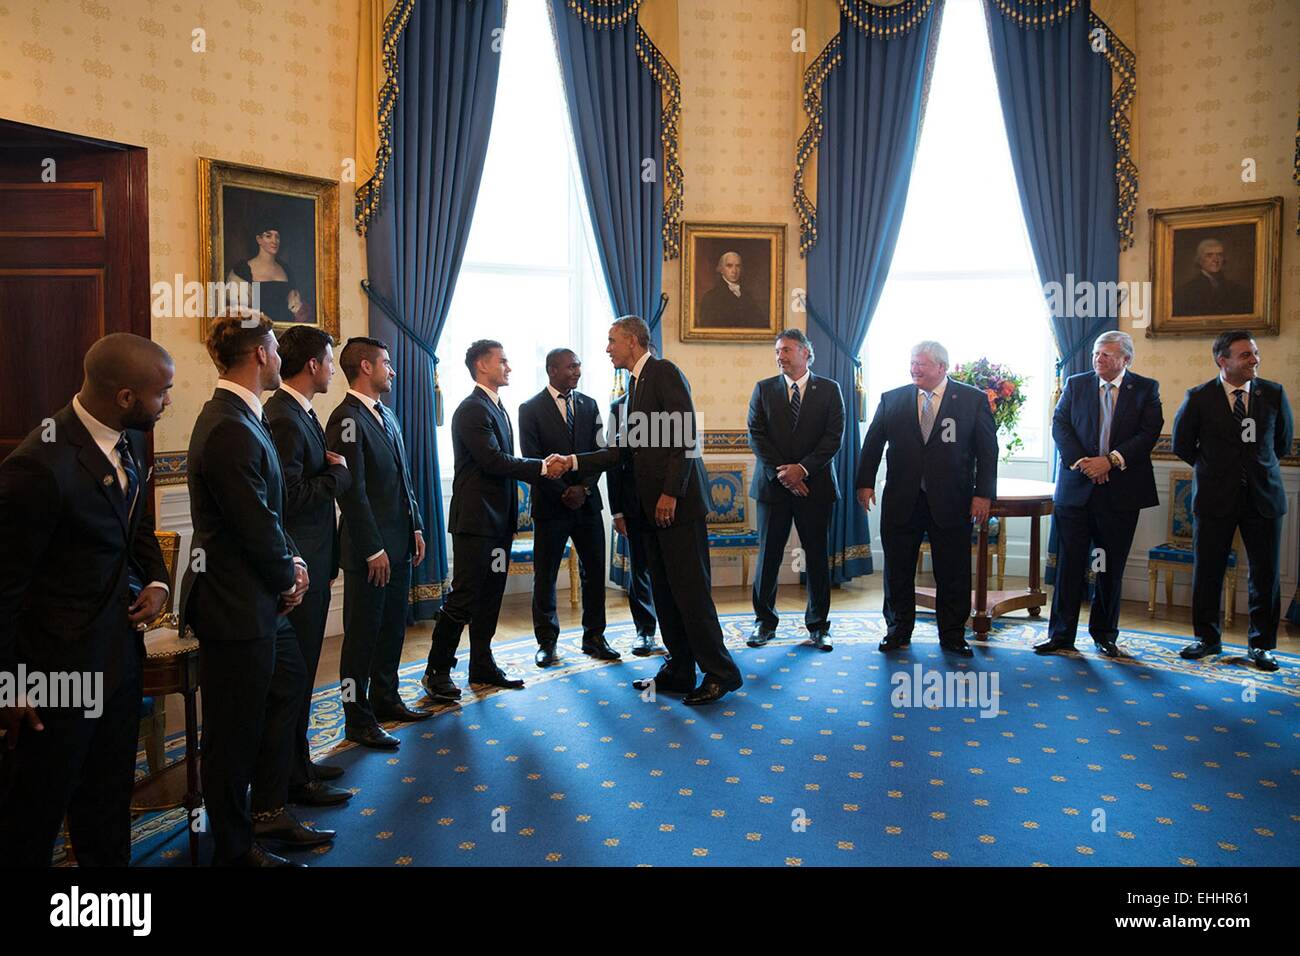 Le président américain Barack Obama salue les joueurs et dirigeants du Sporting Kansas City avant une manifestation pour accueillir l'équipe et de l'honneur leur victoire dans la MLS 2013 Championnat coupe dans la salle bleue de la Maison Blanche le 1 octobre 2014 à Washington, DC. Banque D'Images